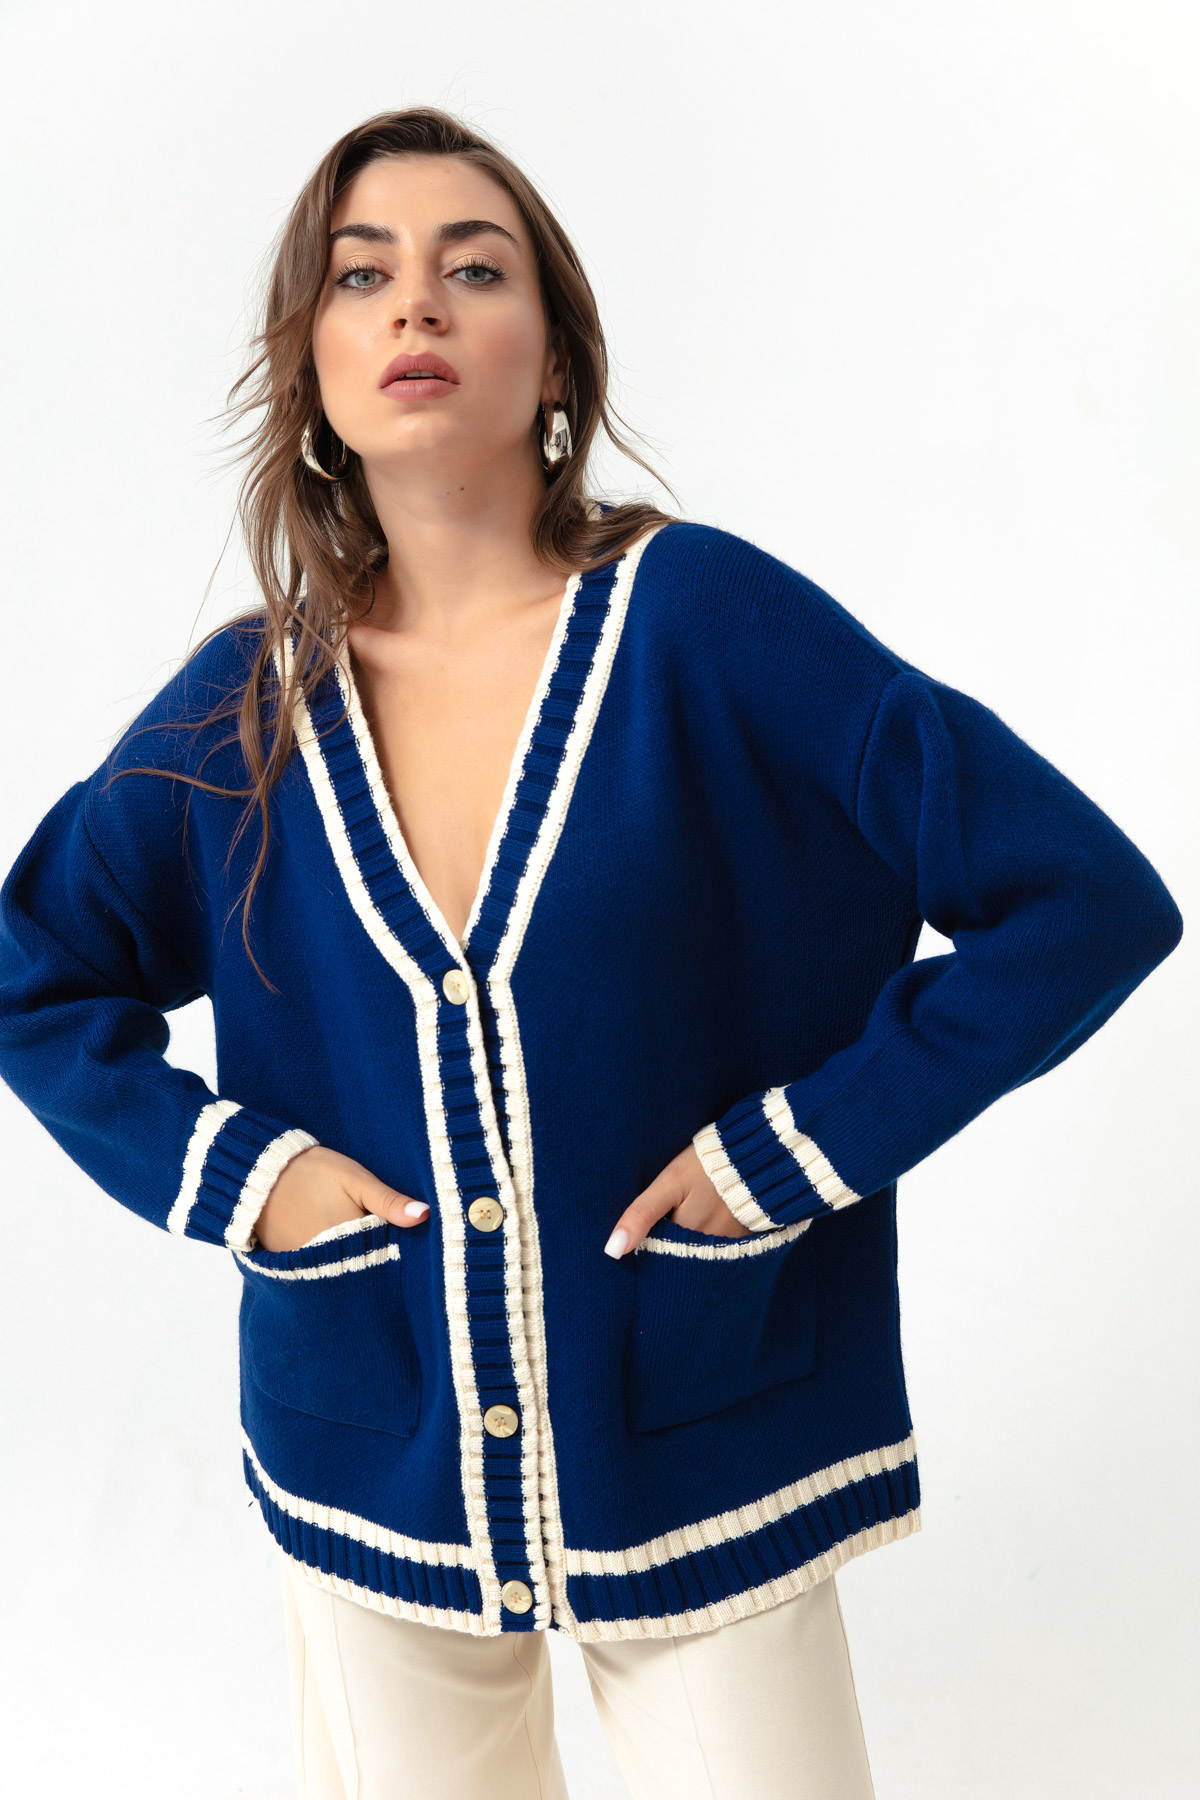 Women's Navy Blue Striped Knitwear Cardigan